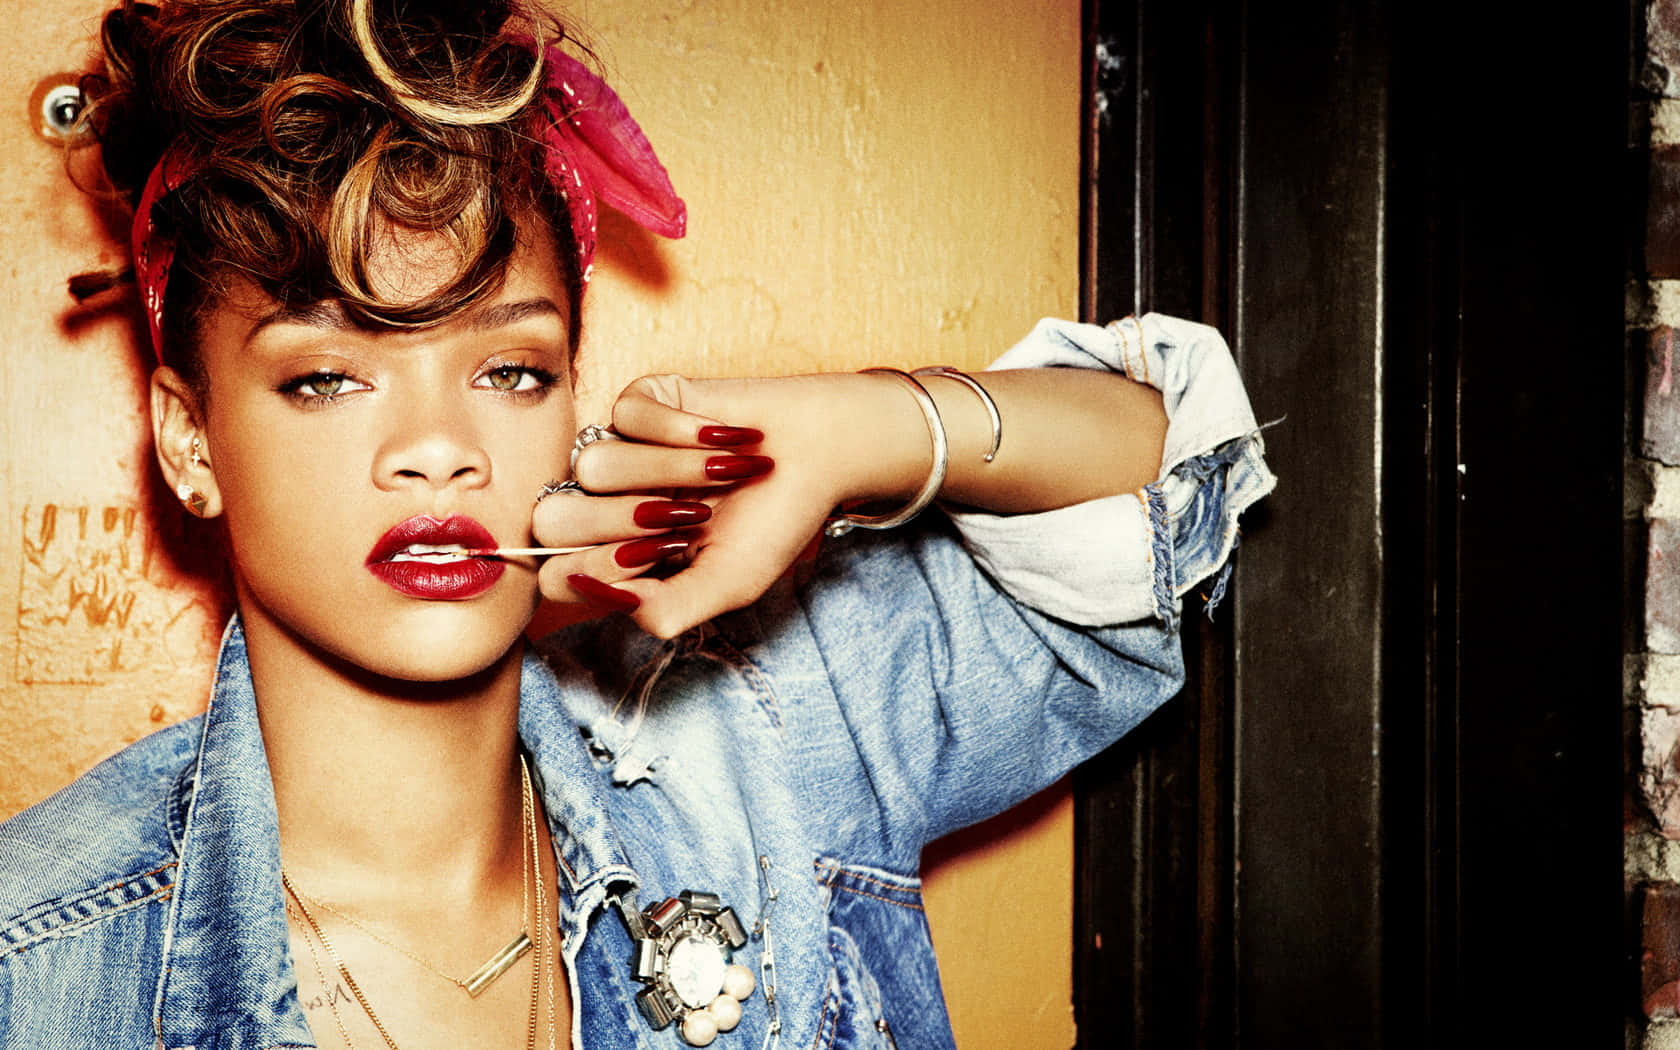 L'iconadella Musica Pop, Rihanna, Stupisce In Un Servizio Fotografico.